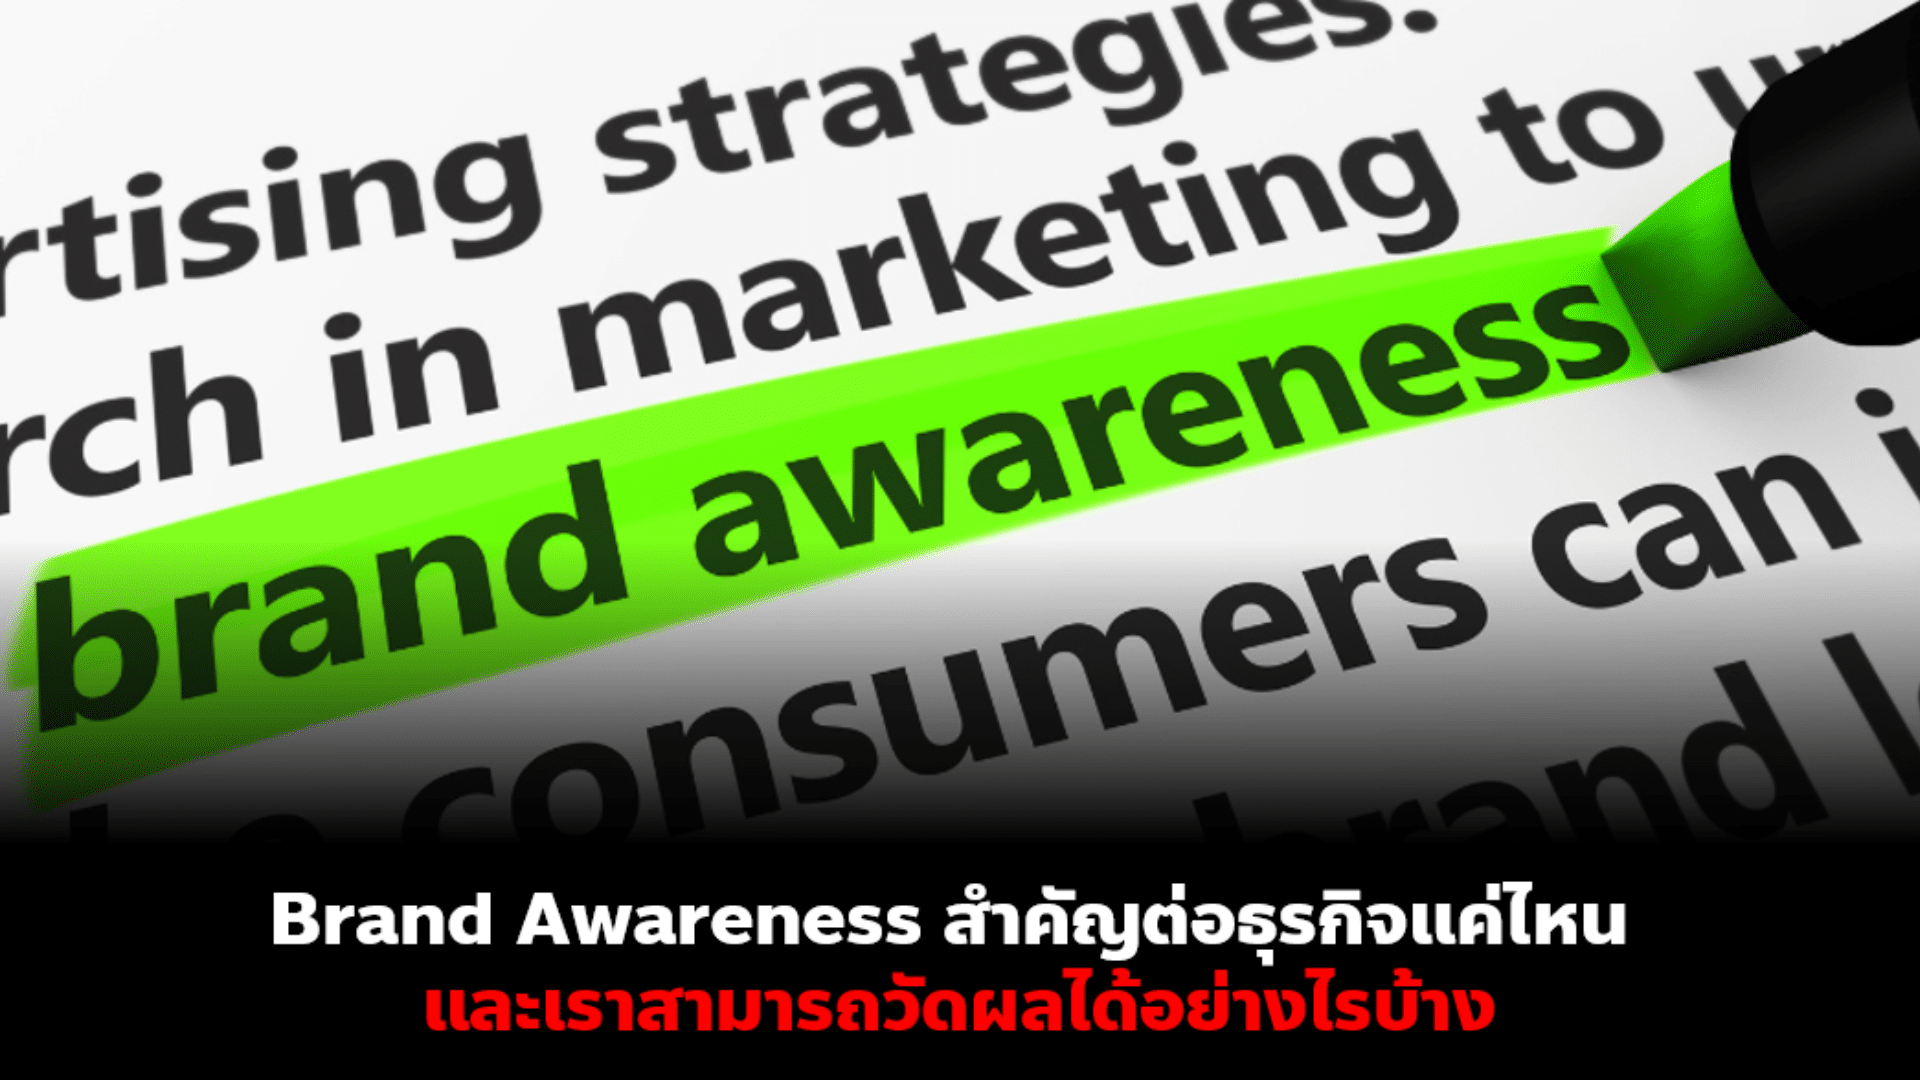 Brand​ Awareness​ สำคัญ​ต่อธุรกิจ​แค่ไหน​ และจะวัดผลได้อย่างไรบ้าง